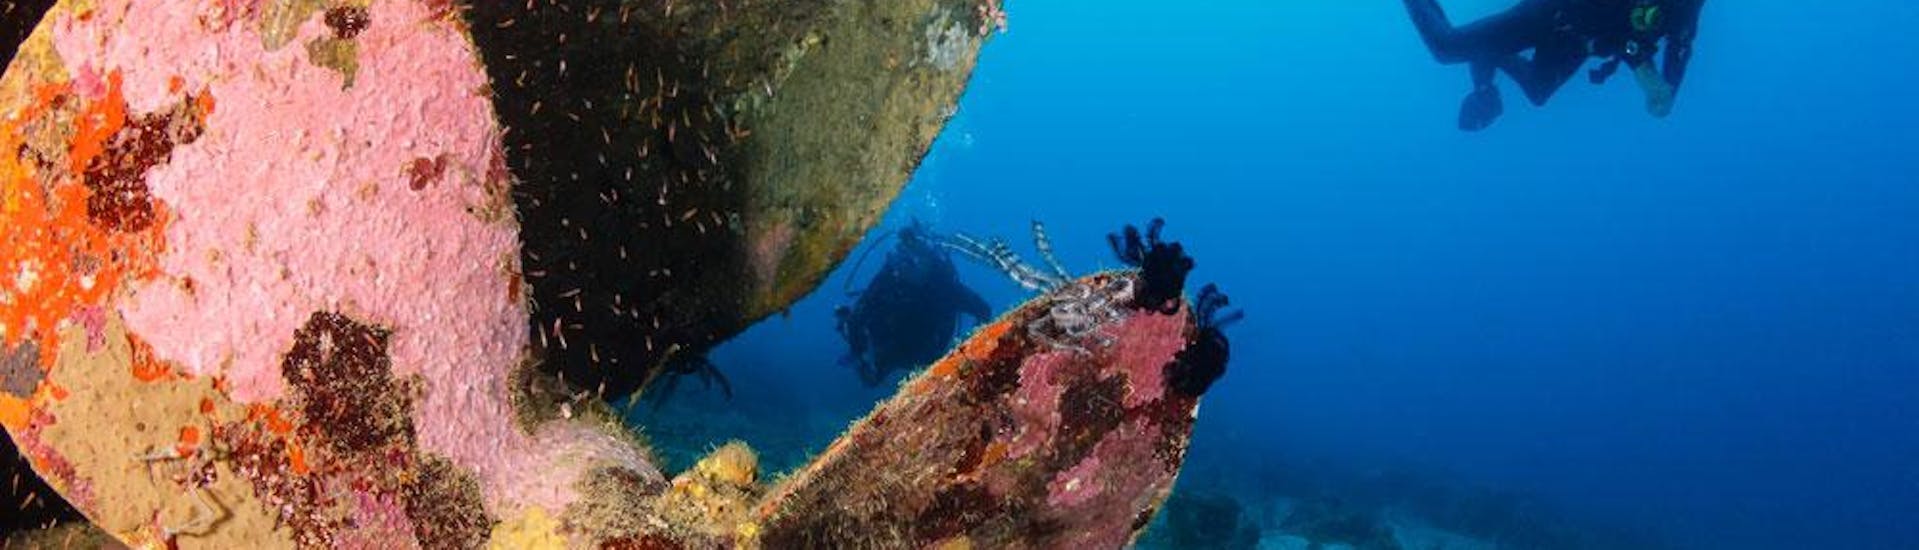 Wreck Diving in Kvarner Bay for Certified Divers with Dive Center Krk - Hero image